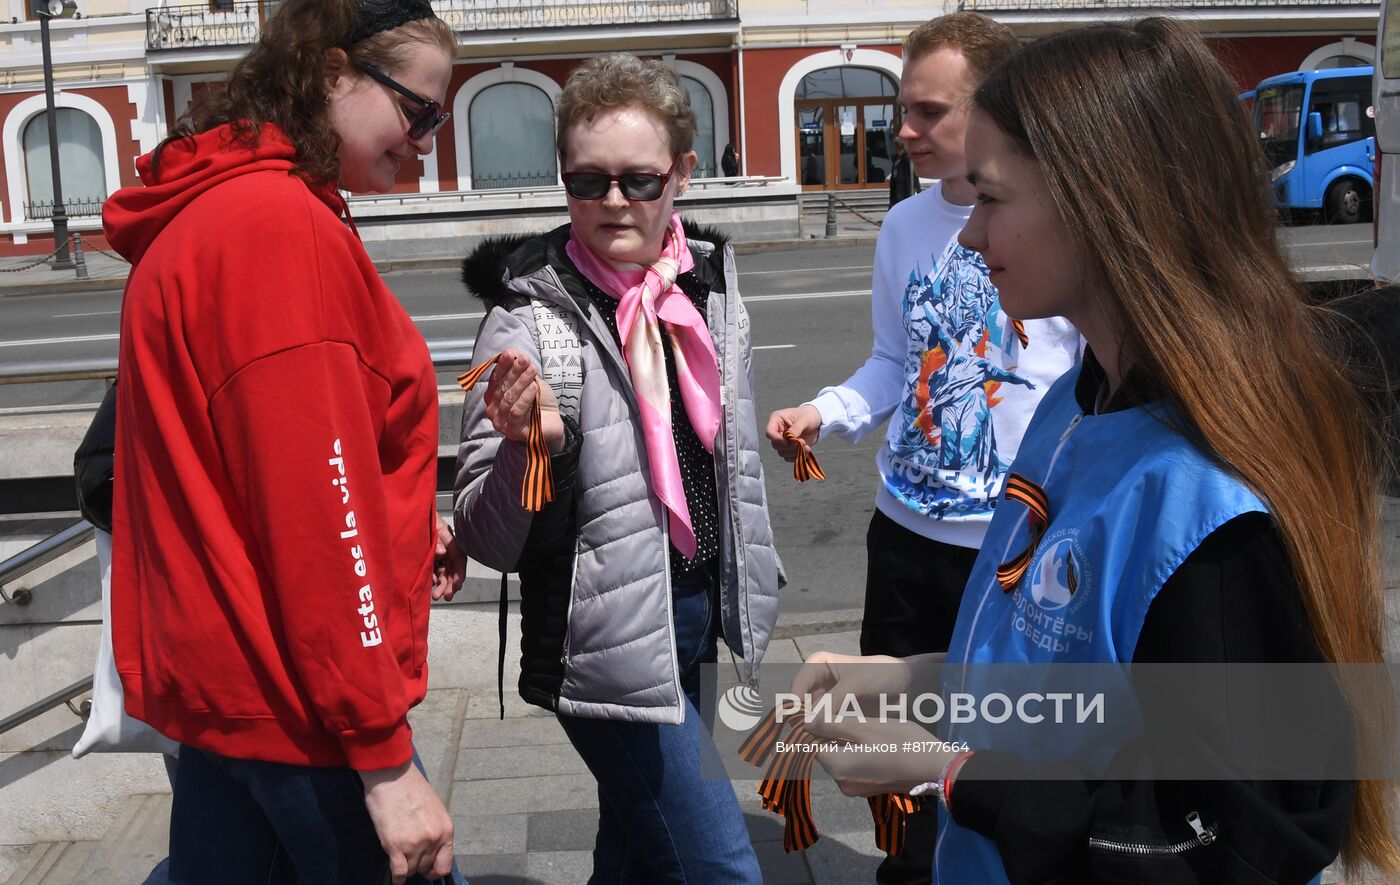 Акция "Георгиевская ленточка" во Владивостоке